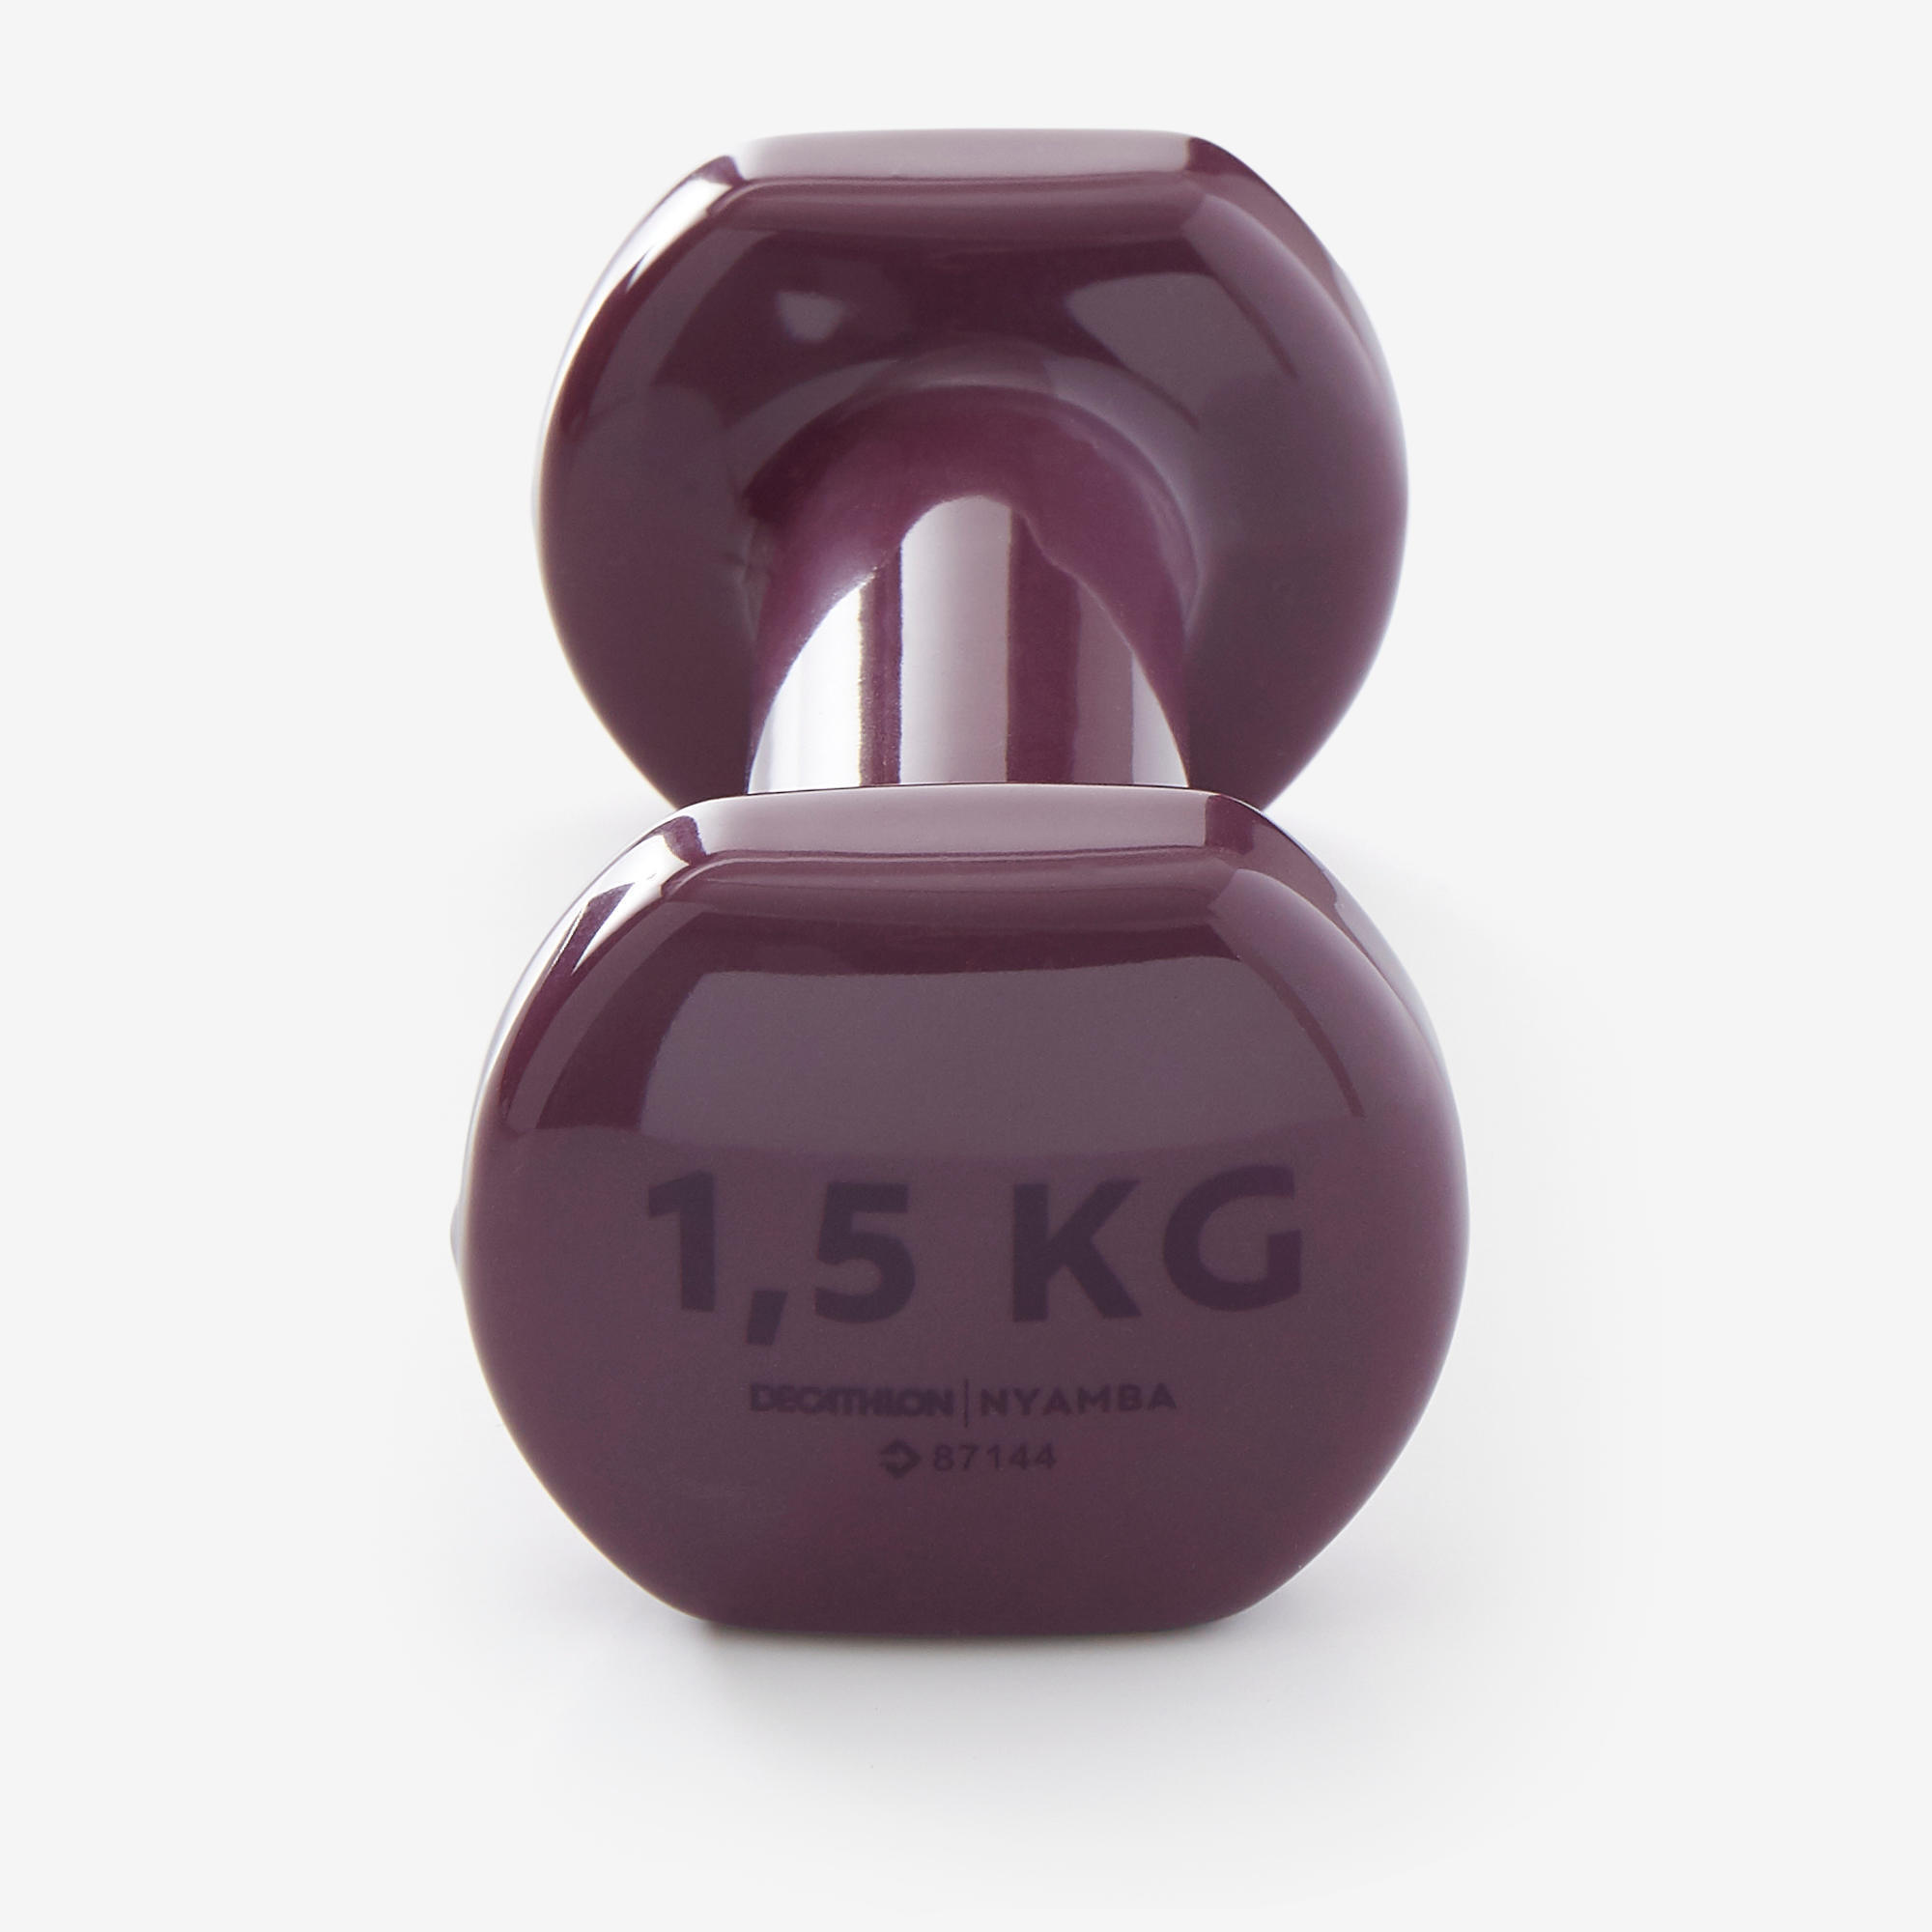 Fitness 1.5 kg Dumbbells Twin-Pack - Burgundy 3/3